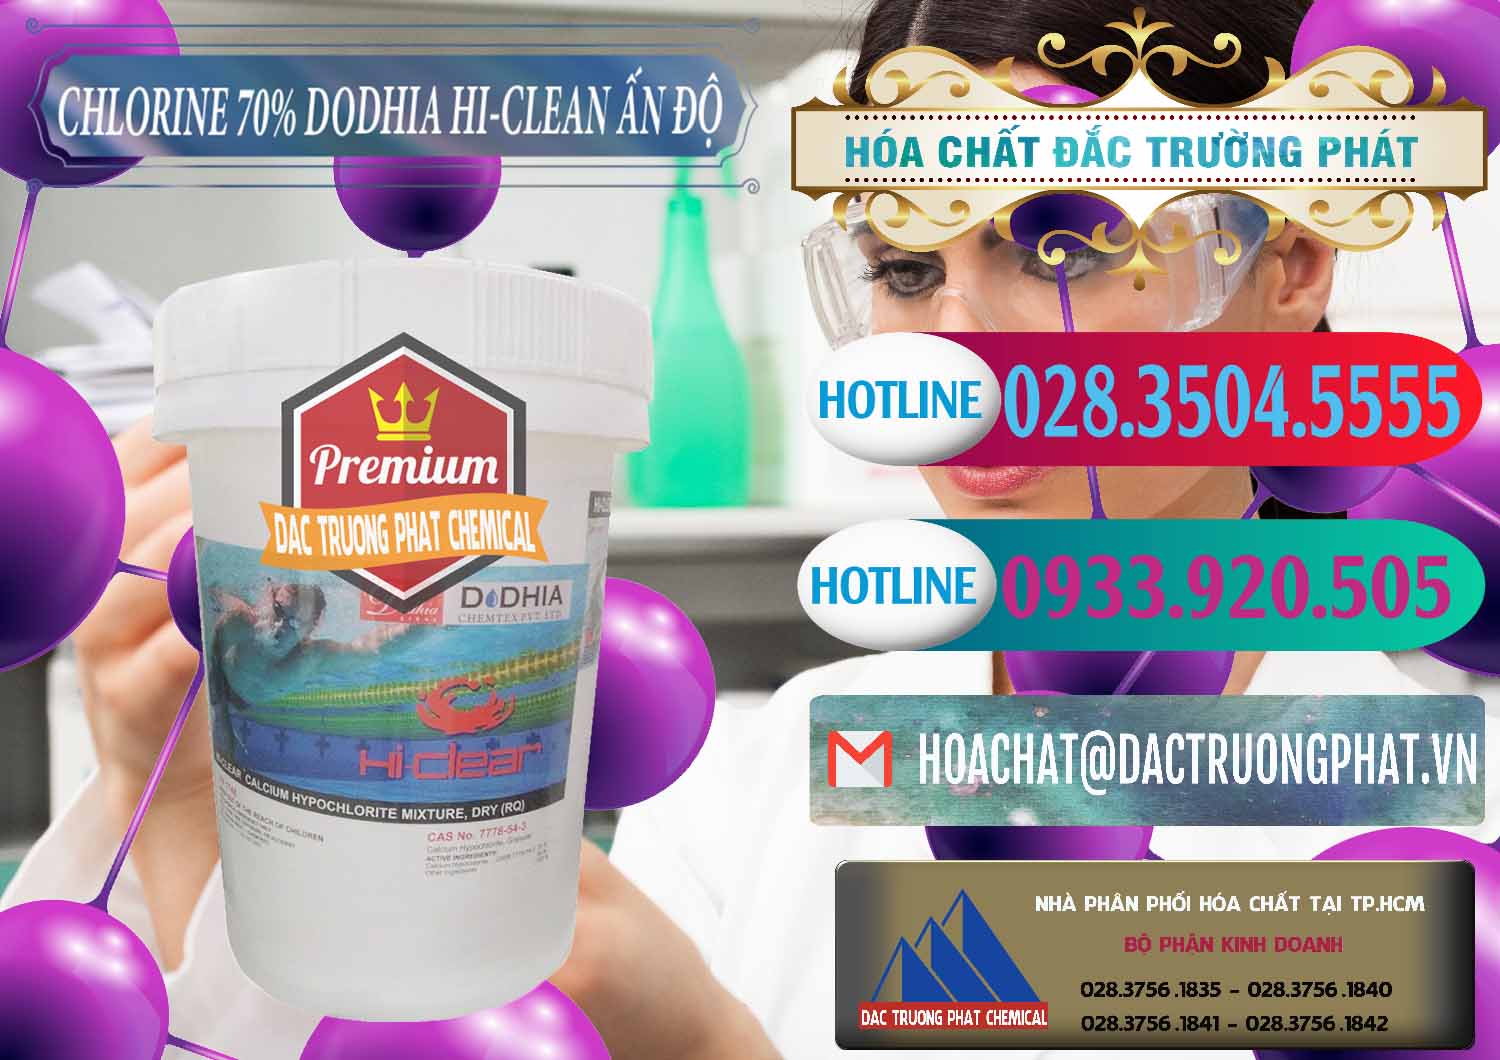 Cty chuyên bán ( phân phối ) Chlorine – Clorin 70% Dodhia Hi-Clean Ấn Độ India - 0214 - Công ty kinh doanh ( phân phối ) hóa chất tại TP.HCM - truongphat.vn